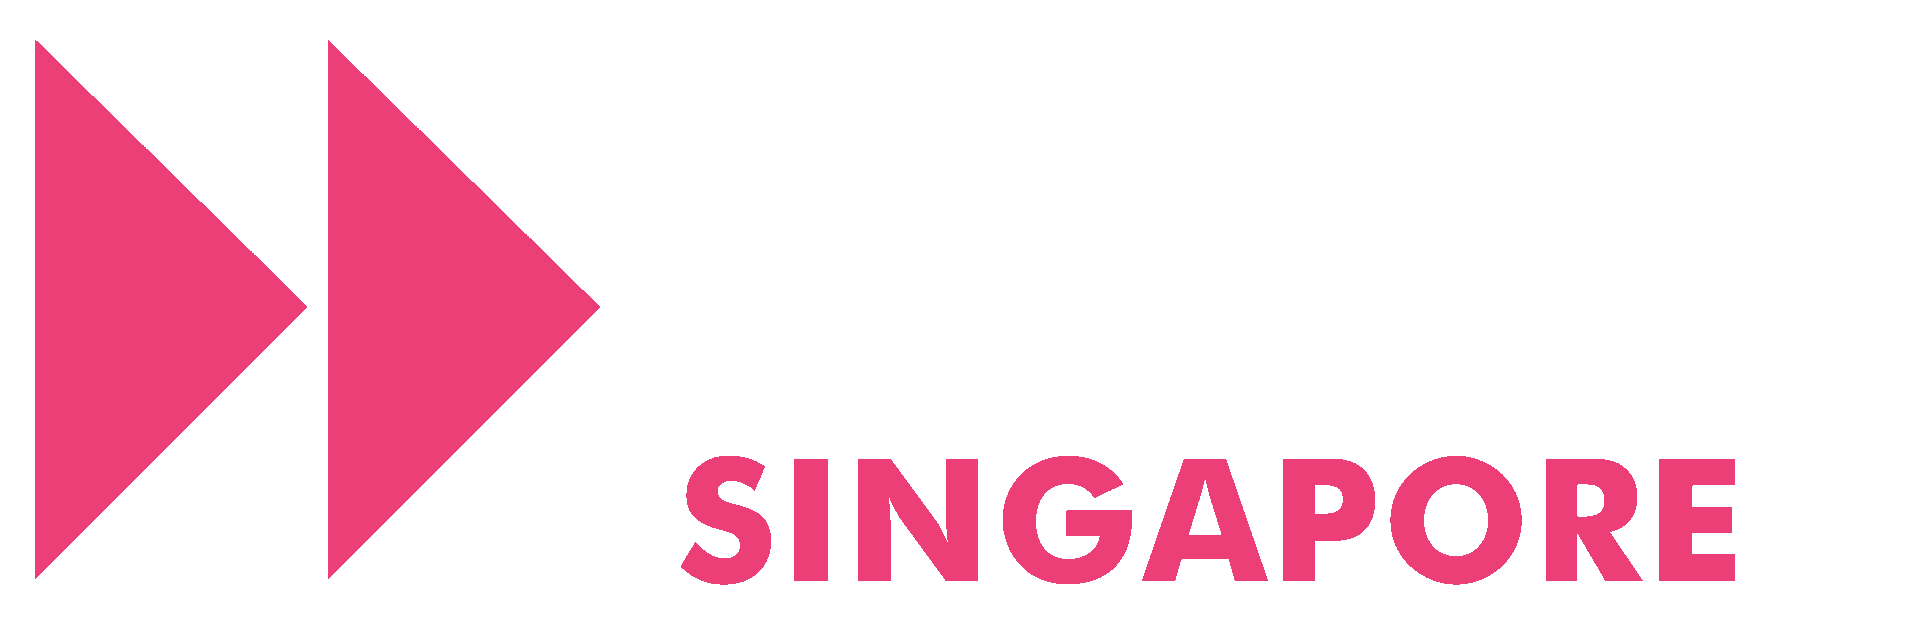 Awesome Foundation Singapore